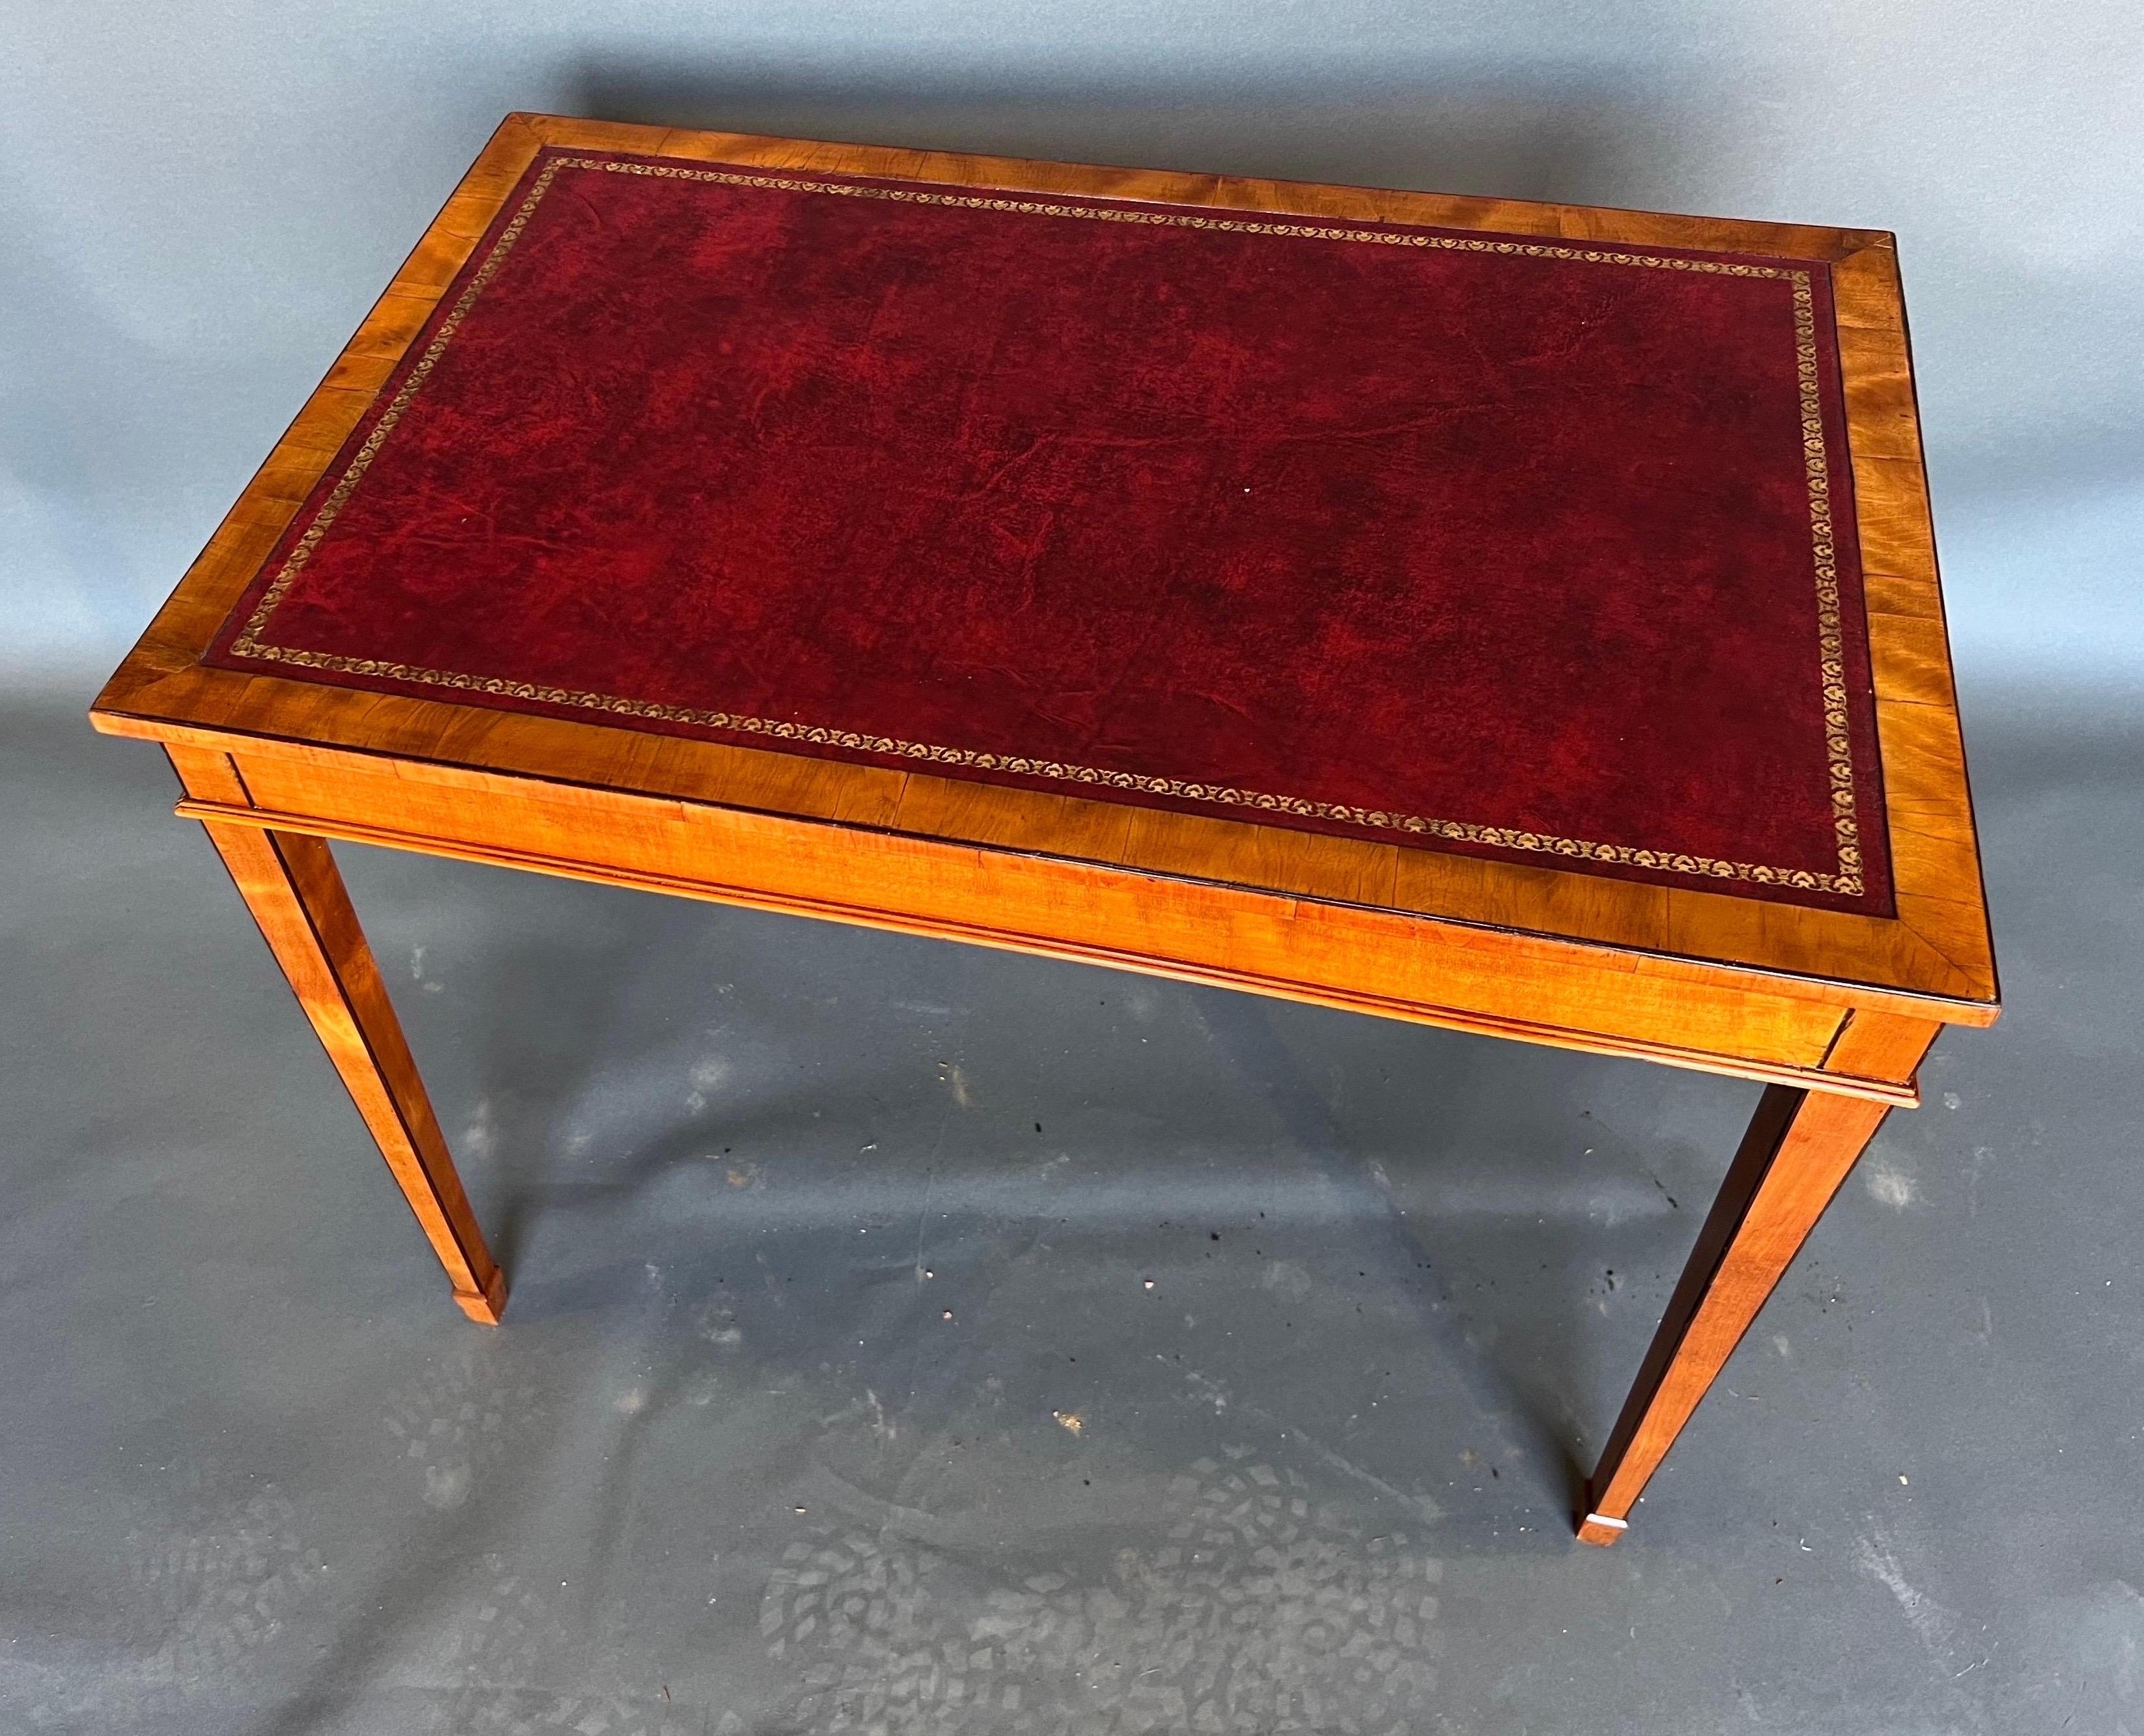 Englischer Tisch aus dem 19. Jahrhundert mit Satinholz und Lederplatte. Sehr hübsche Farbe und der kleinere Maßstab macht ihn zu einer vielseitigeren Option als Beistelltisch oder Konsole.